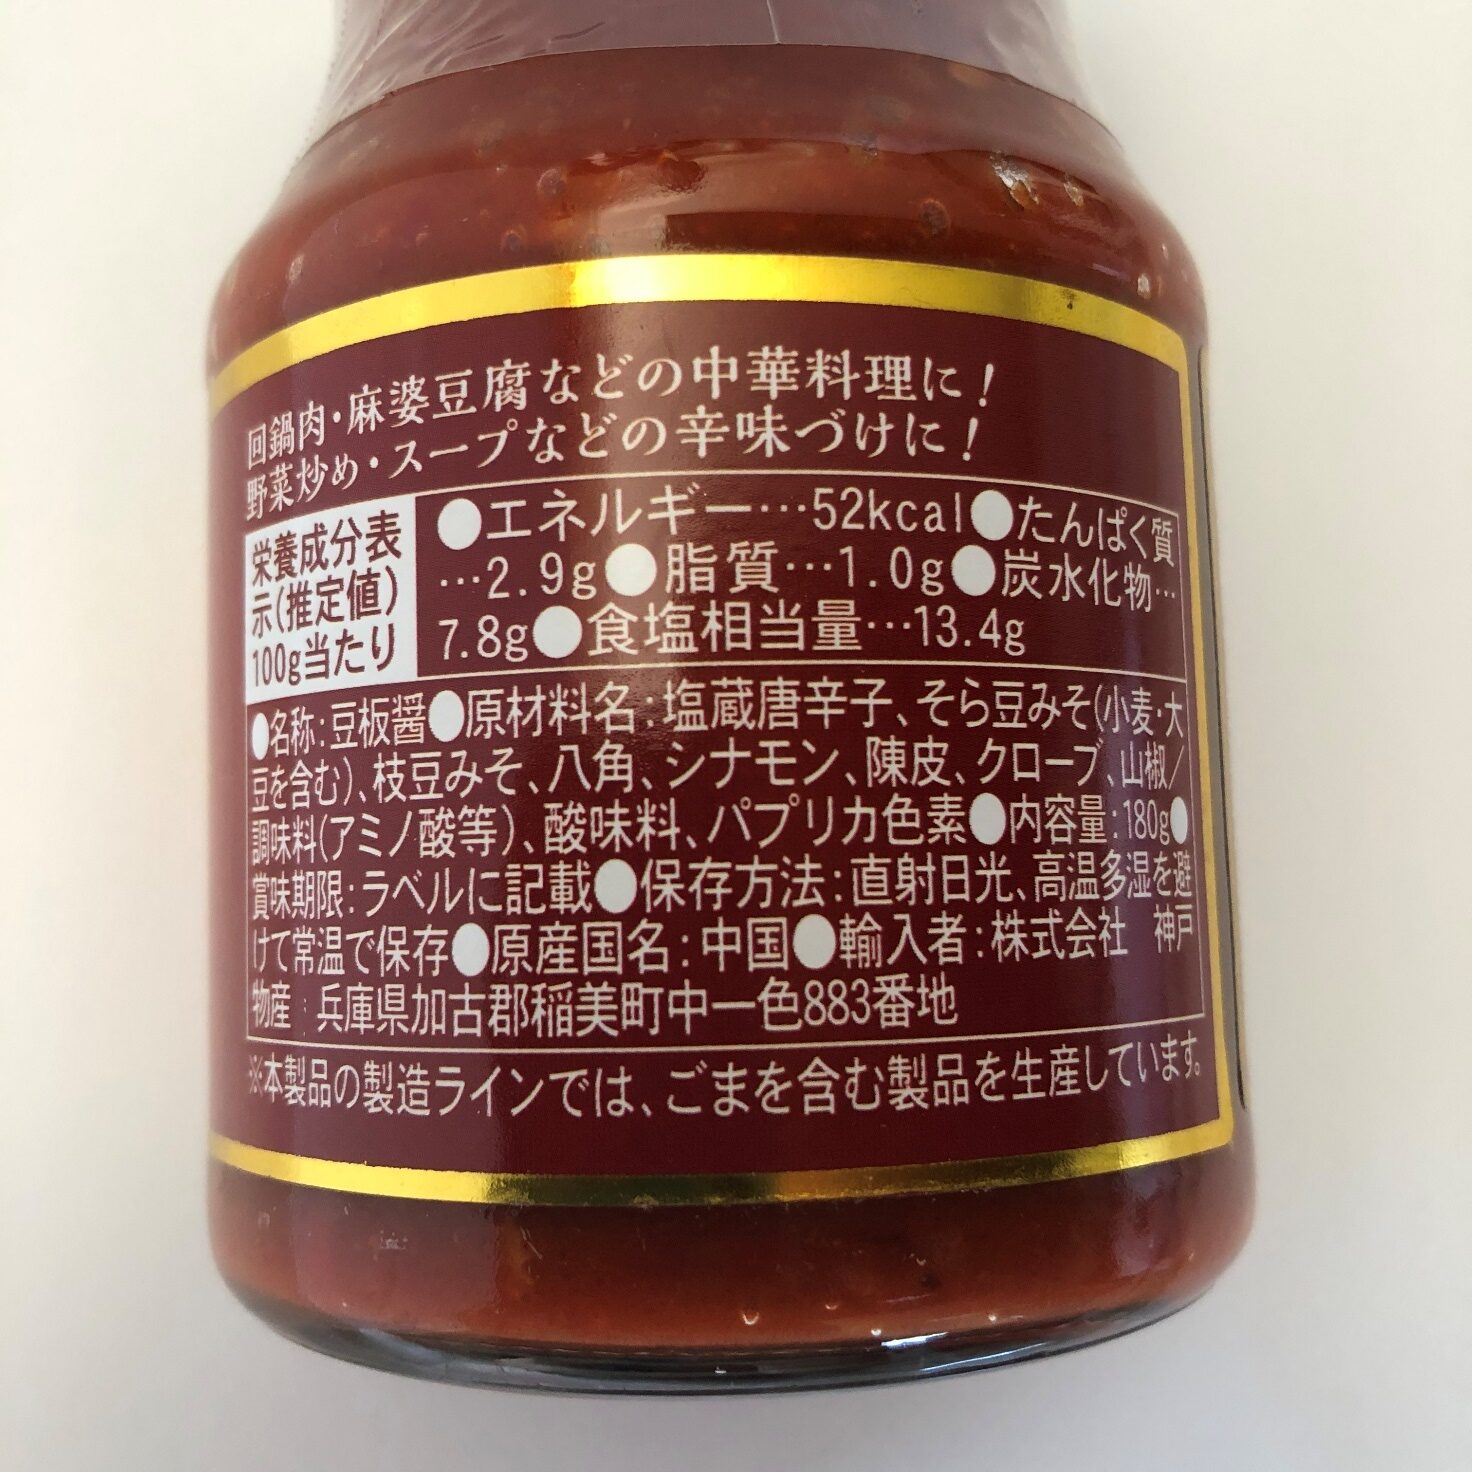 業務スーパーの四川豆板醤の原材料名と原産国名の表記